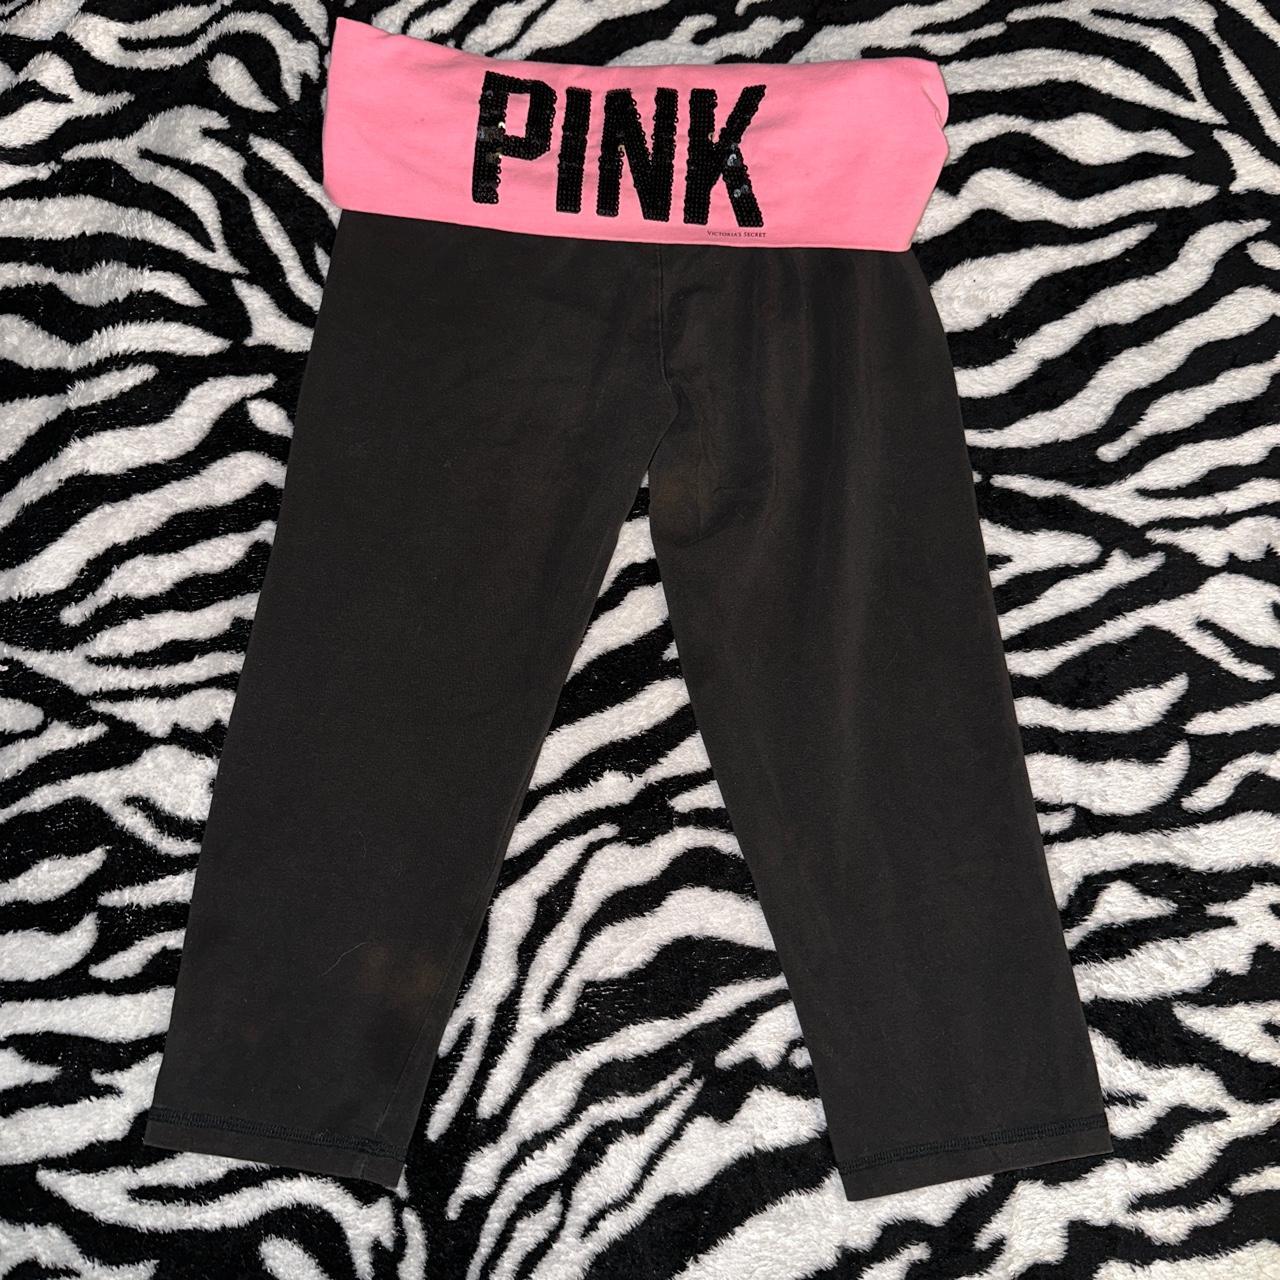 Victorias Secret PINK Y2k fold over yoga leggings! - Depop